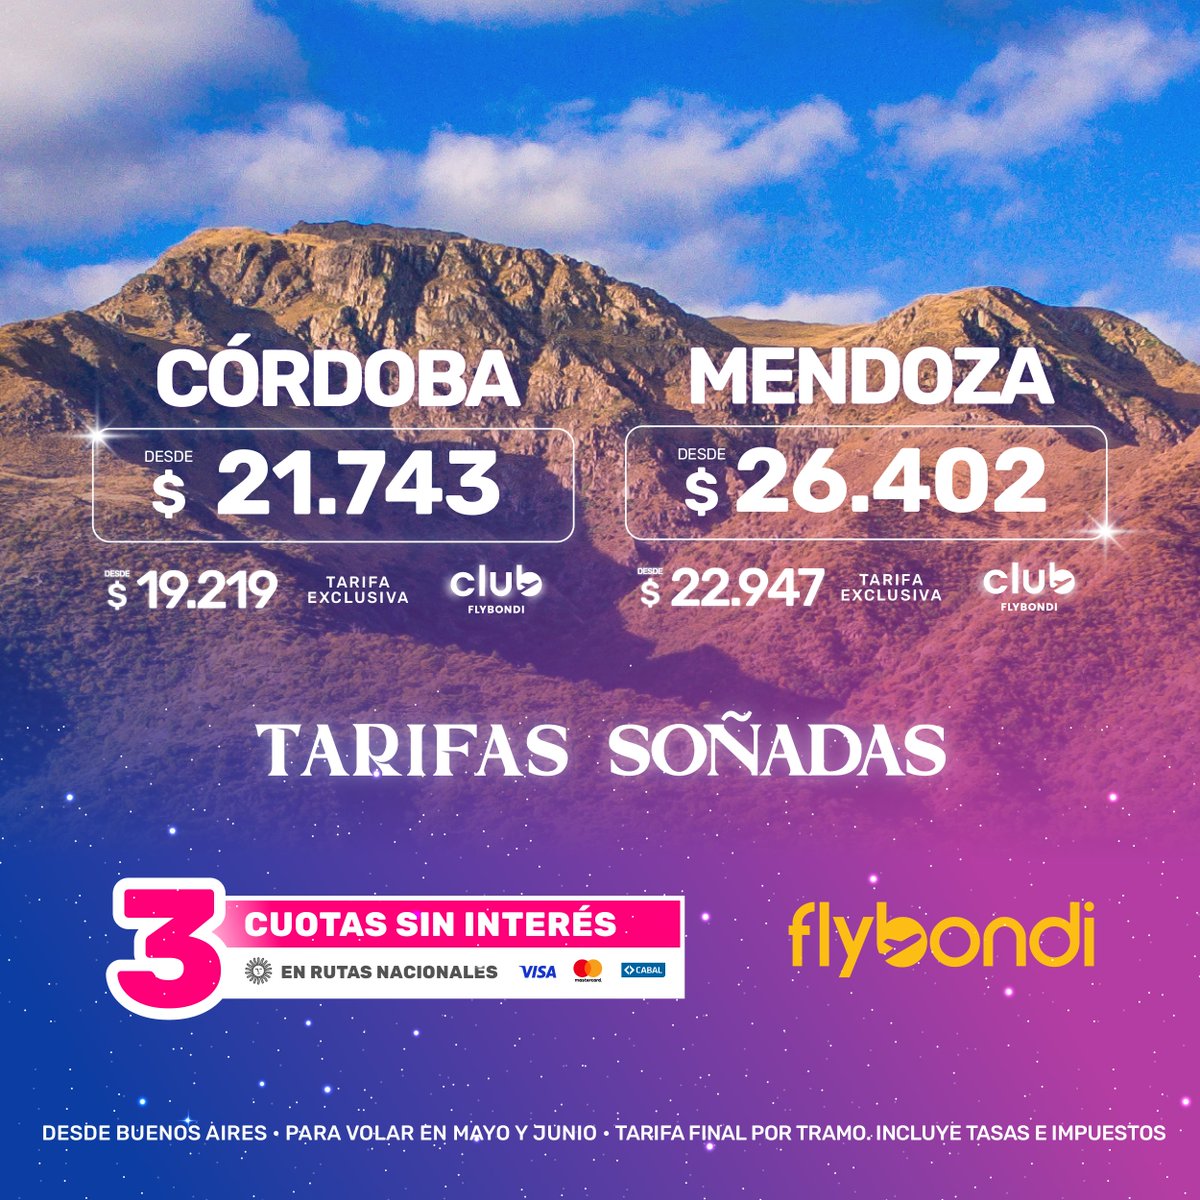 Esta PROMO es un sueño hecho realidad 😴💛 Bondi, mandale al click acá 👉🏻bit.ly/3kl0aFn y volá en 3 cuotas sin interés ✈️ #Flybondi #LaLibertadDeVolar #cuotas